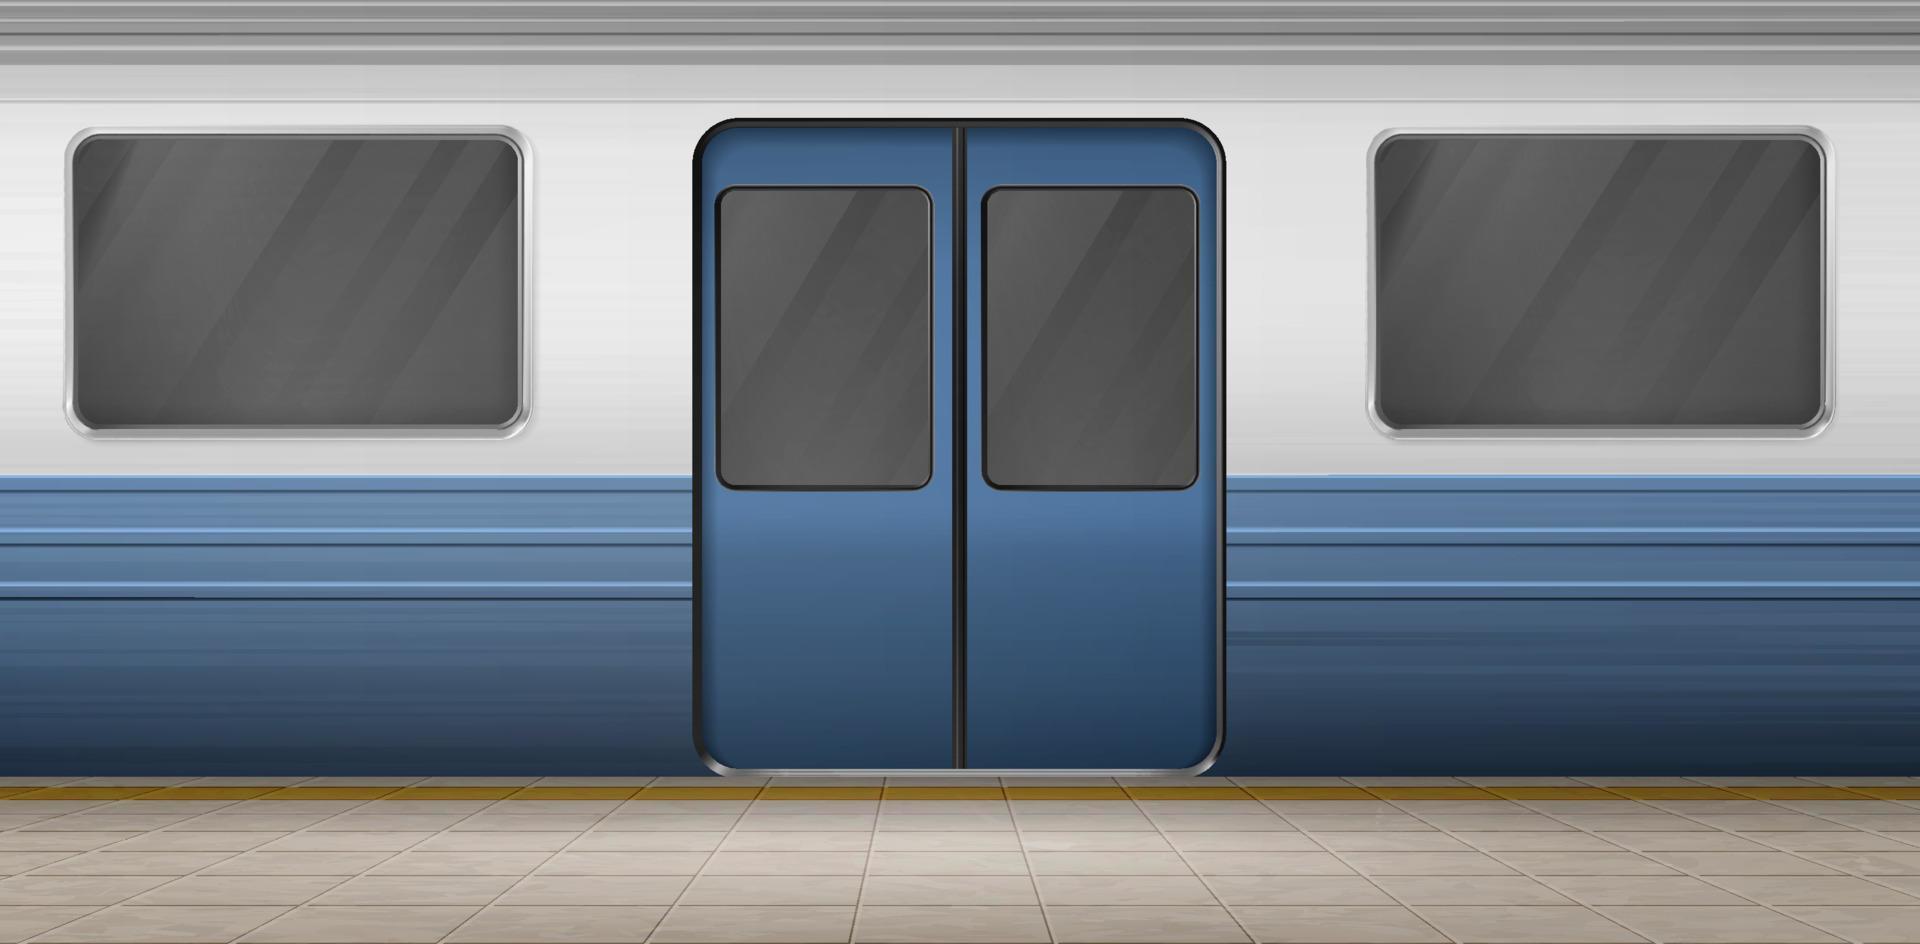 puerta del metro, tren de metro en la plataforma de la estación vacía vector